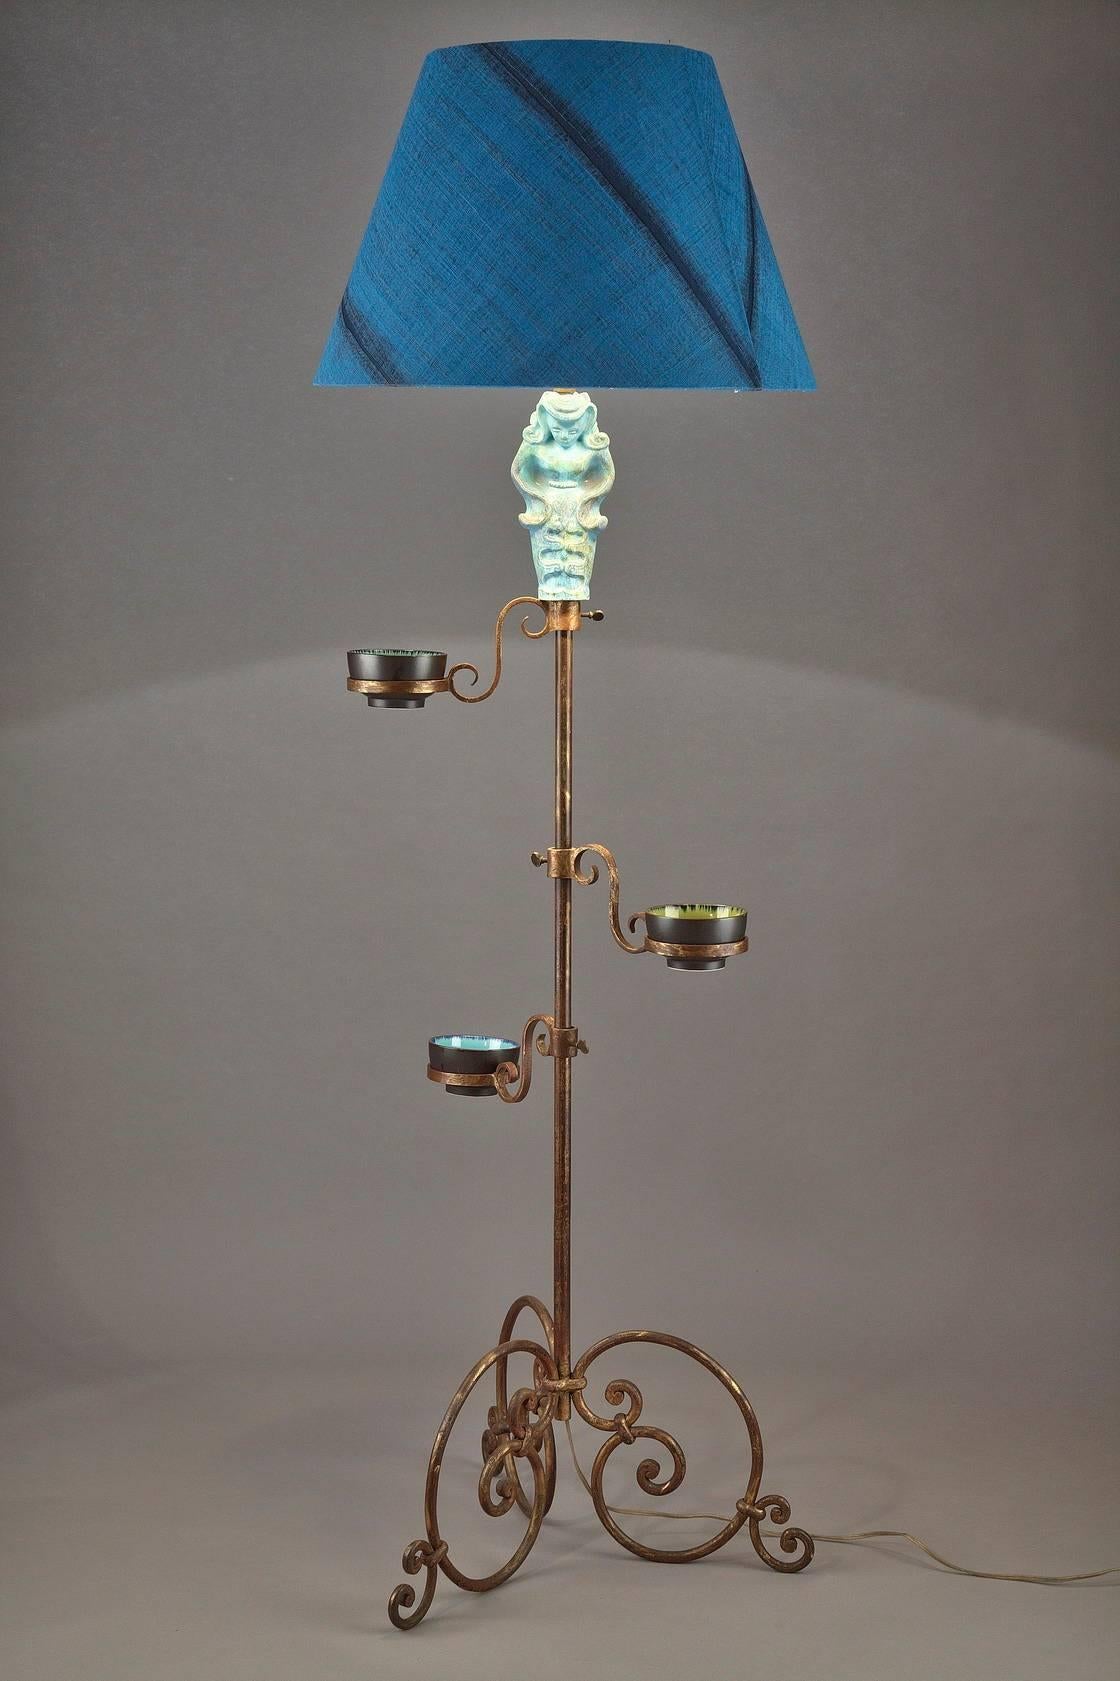 Lampadaire en fer forgé et doré, la tige décorée d'une figure en céramique bleue et de trois petits bols bleus et verts. Il repose sur trois pieds à volutes. 

vers 1950.
Dimension : L 60cm, P 60cm, H 180cm.

  